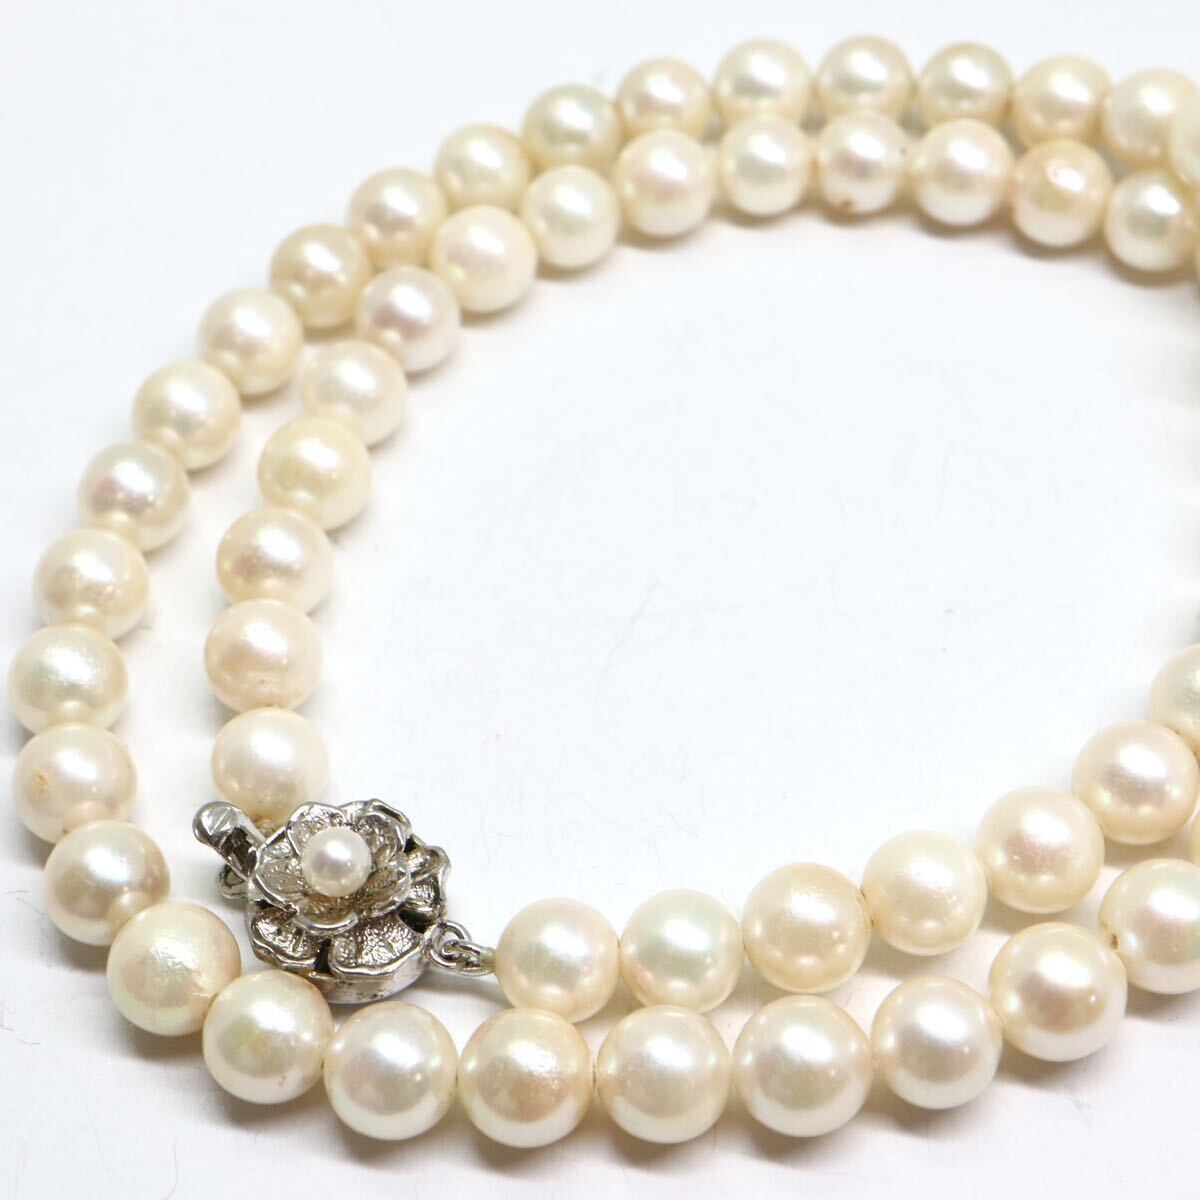 《アコヤ本真珠ネックレス》A 約6.5-7.0mm珠 28.5g 約41.5cm pearl necklace ジュエリー jewelry DA0/DA0の画像1